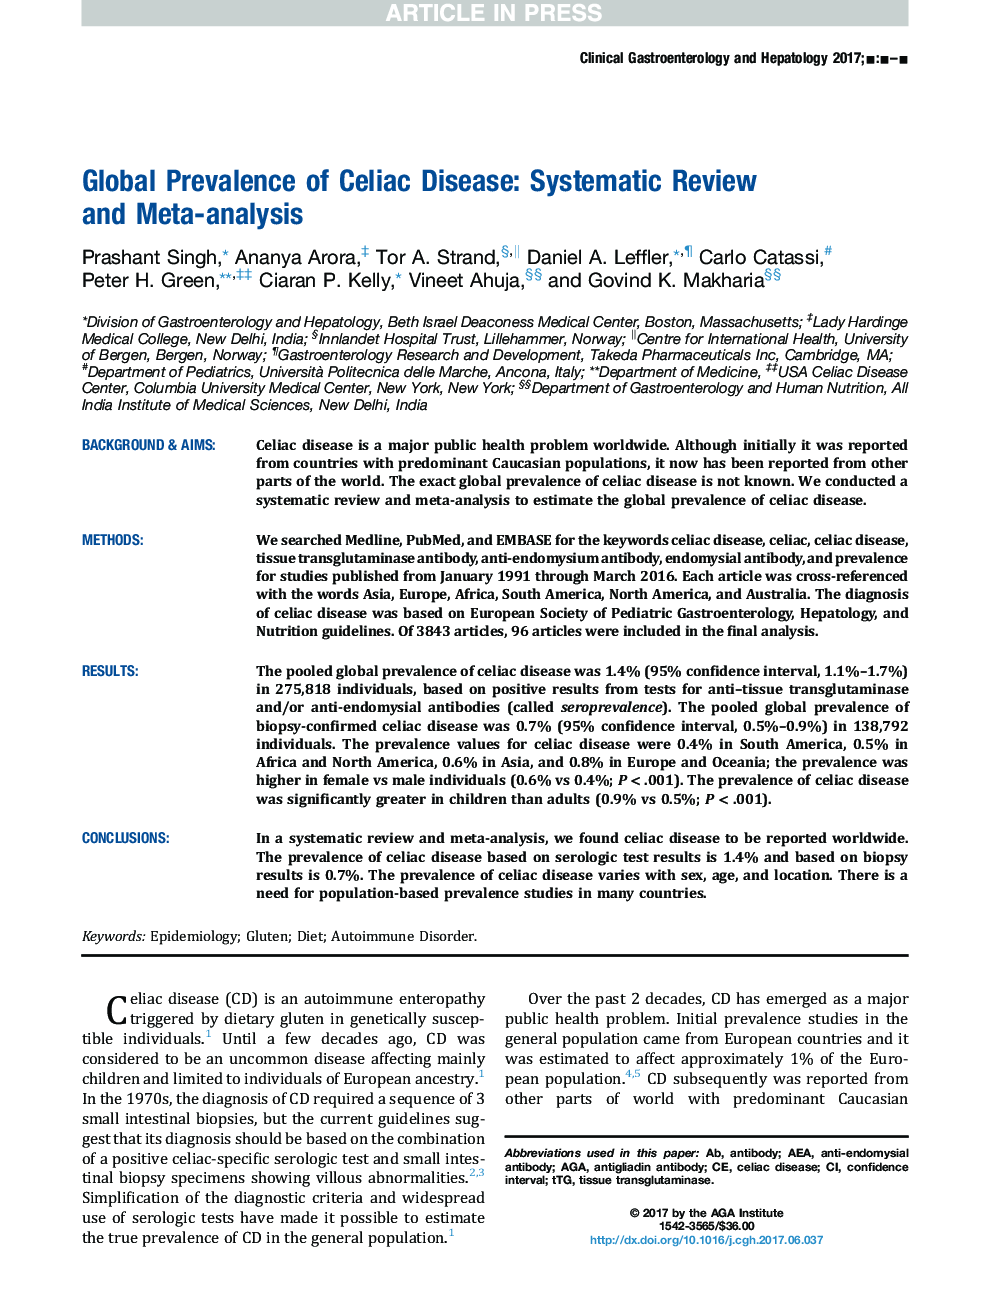 شیوع جهانی بیماری سلیاک: بررسی سیستماتیک و یک متاآنالیز 